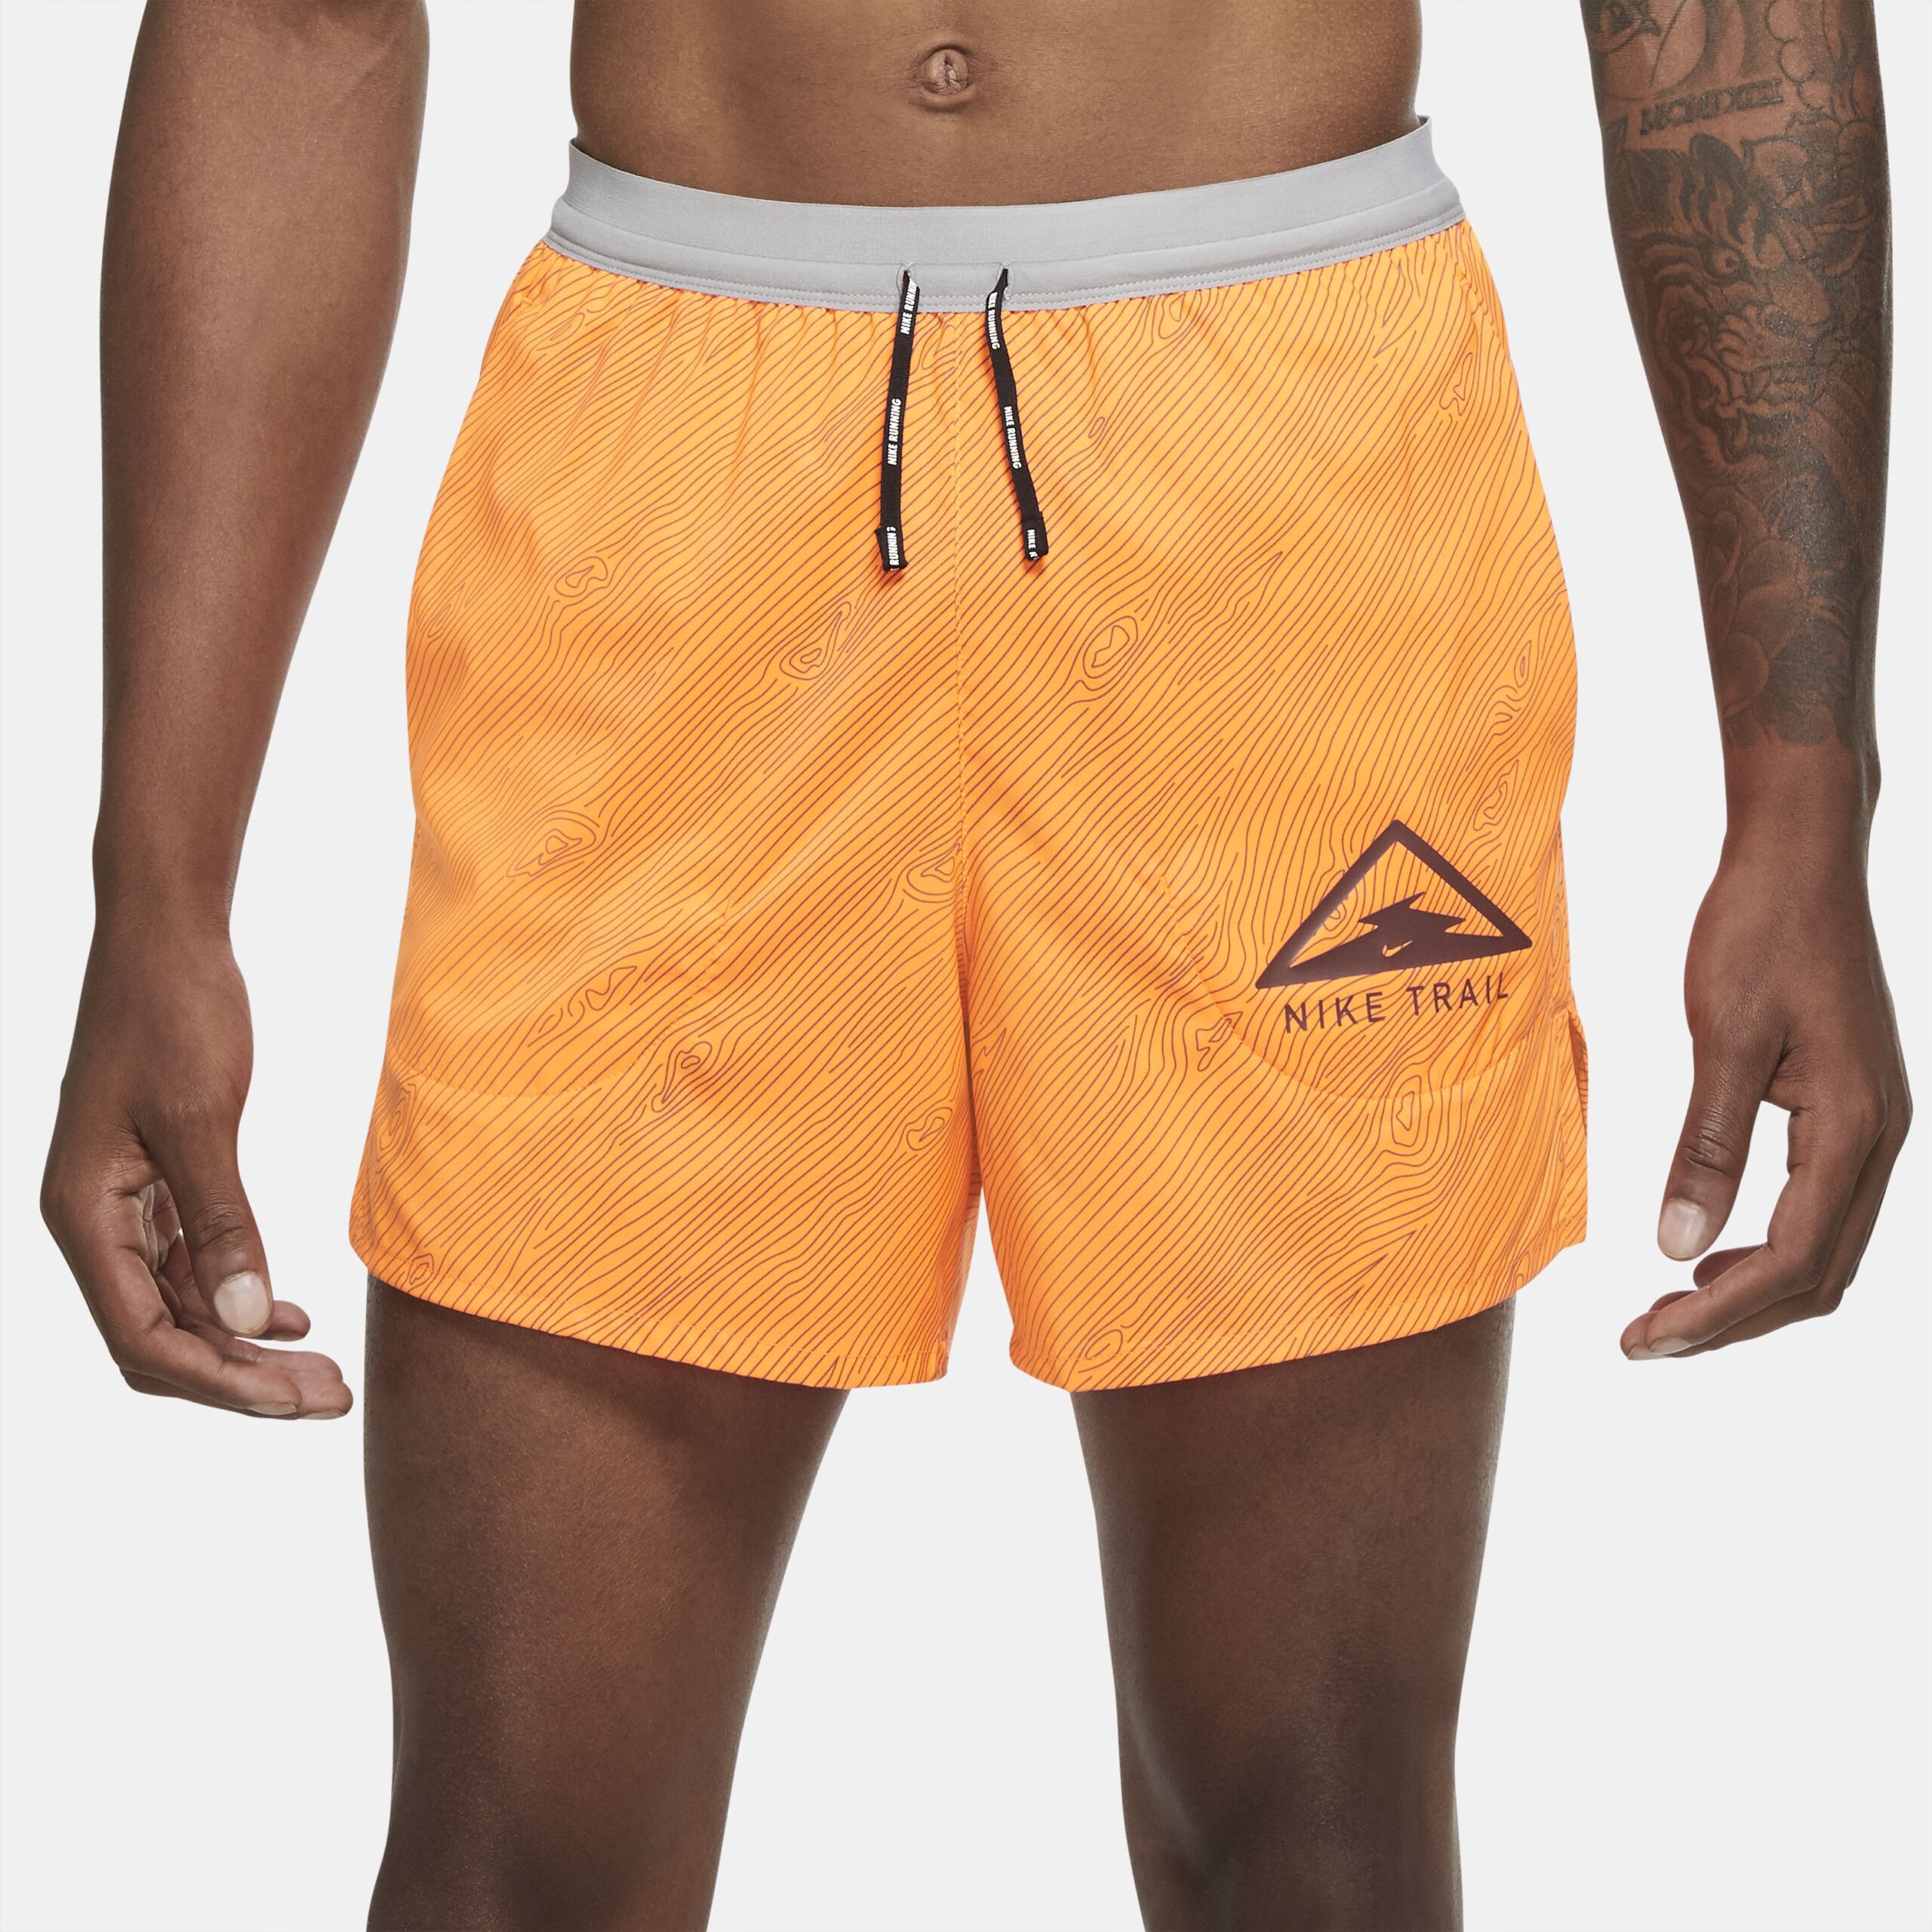 Pantalon Nike Running Naranja